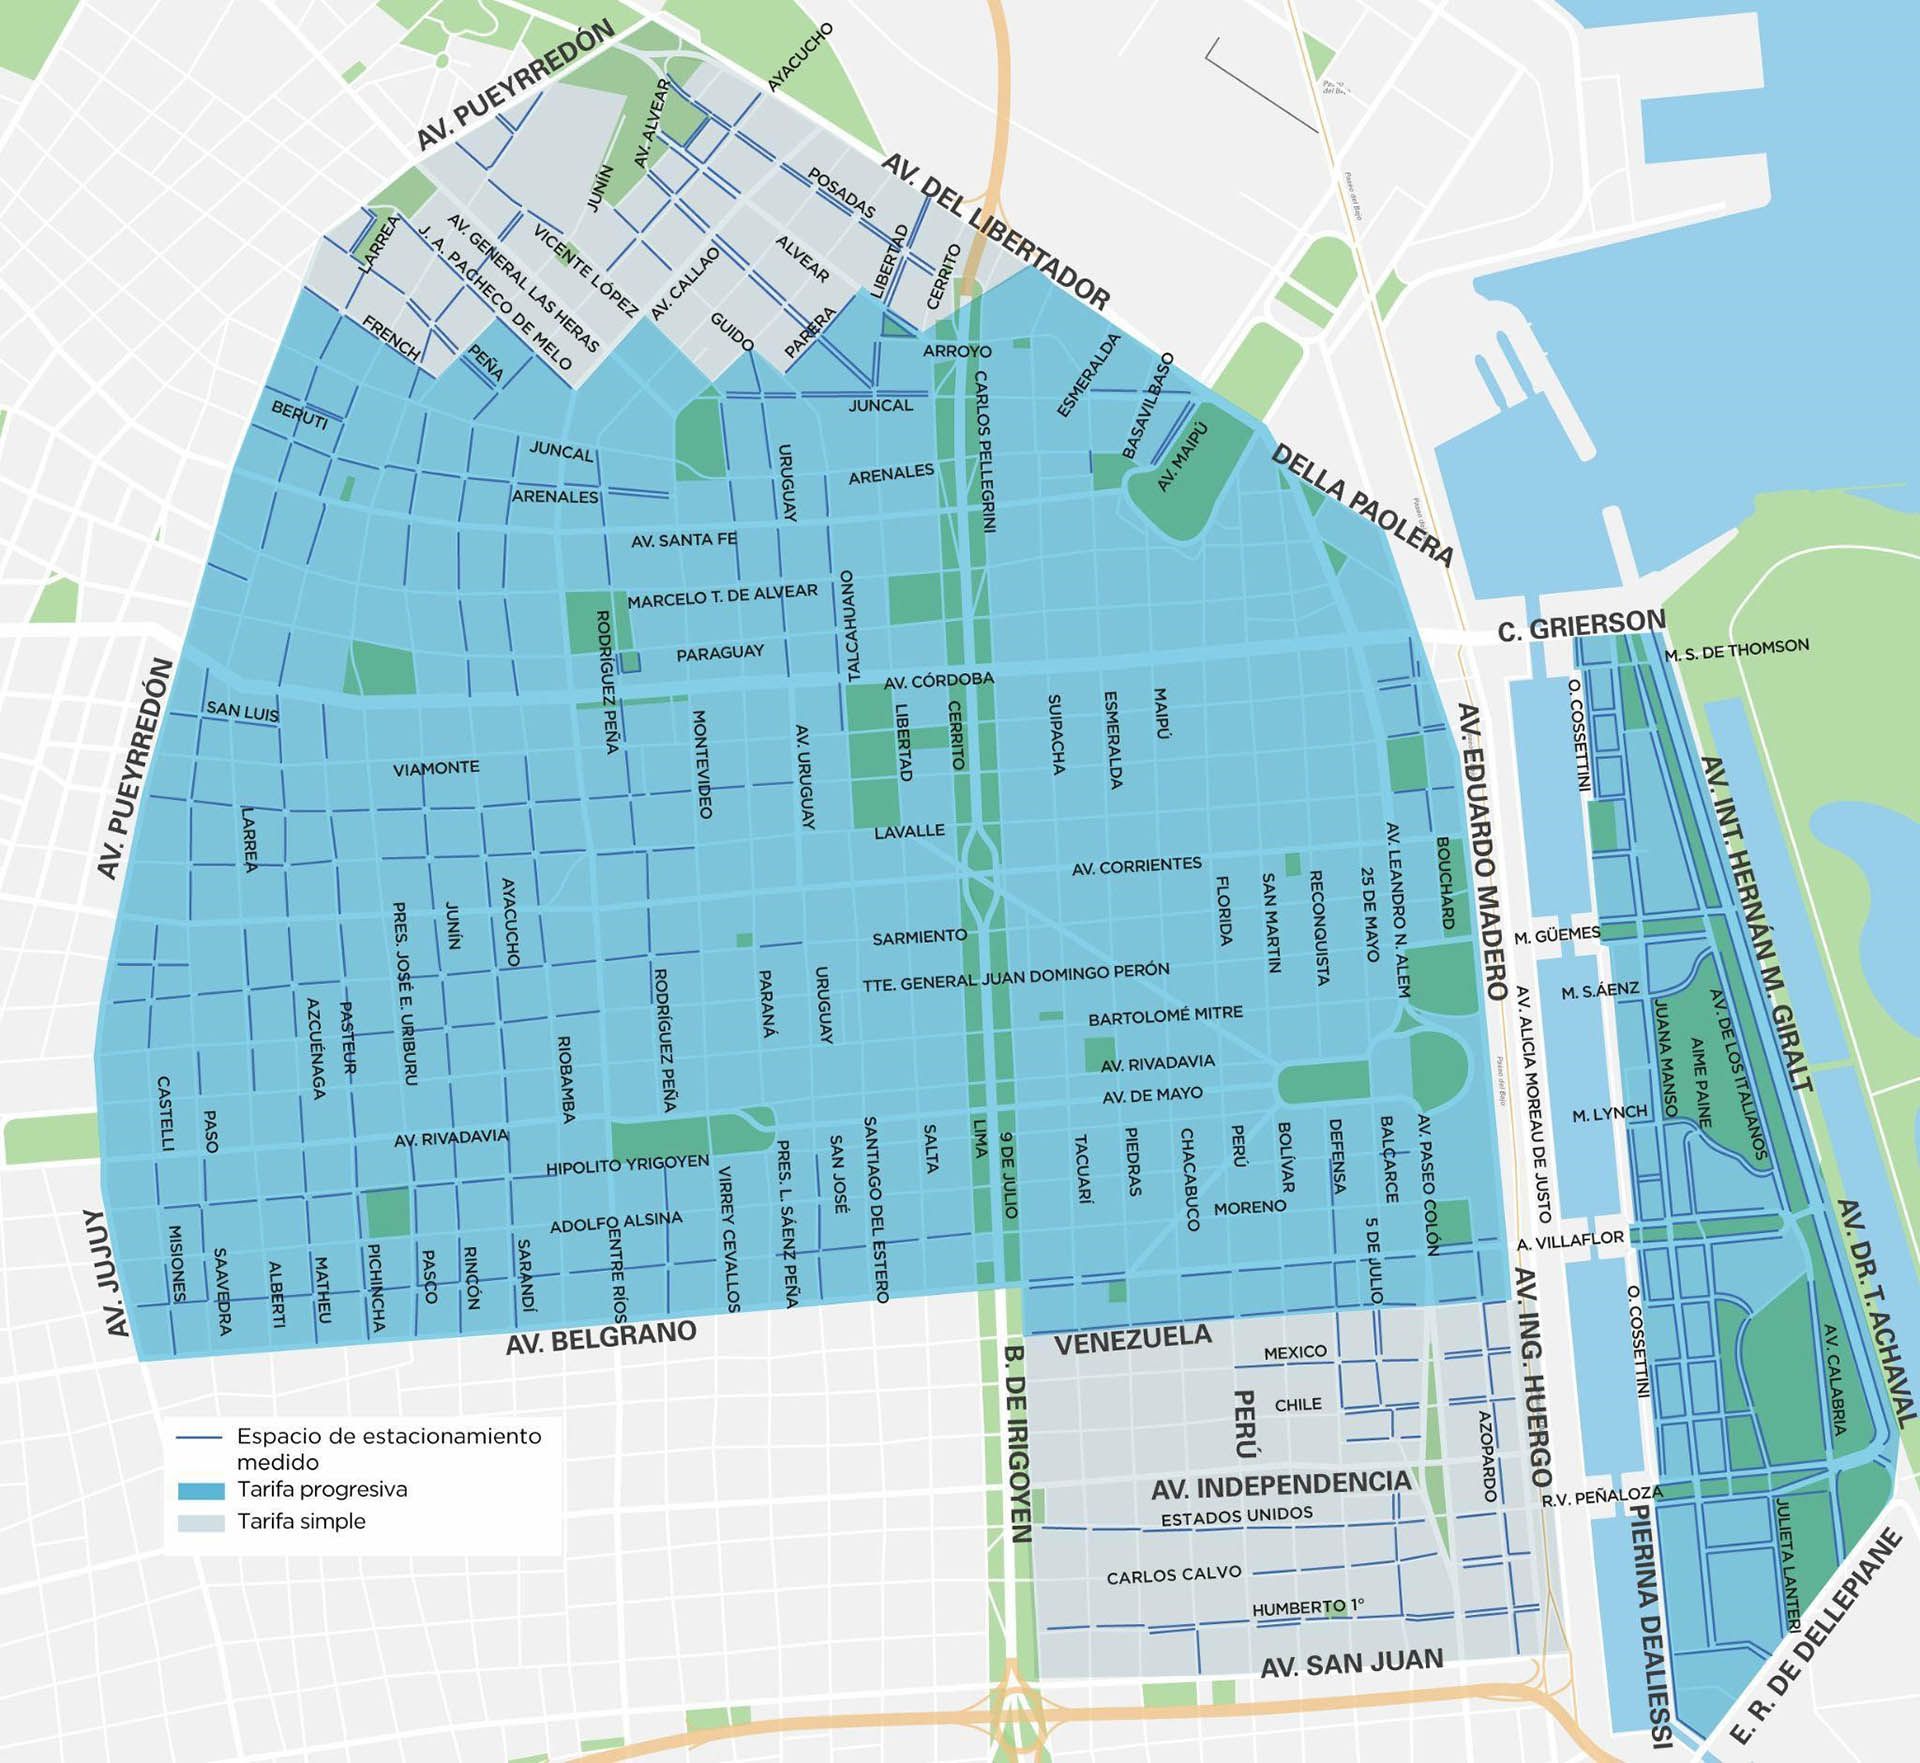 Mapa - Nuevos lugares de estacionamiento medido en Puerto Madero